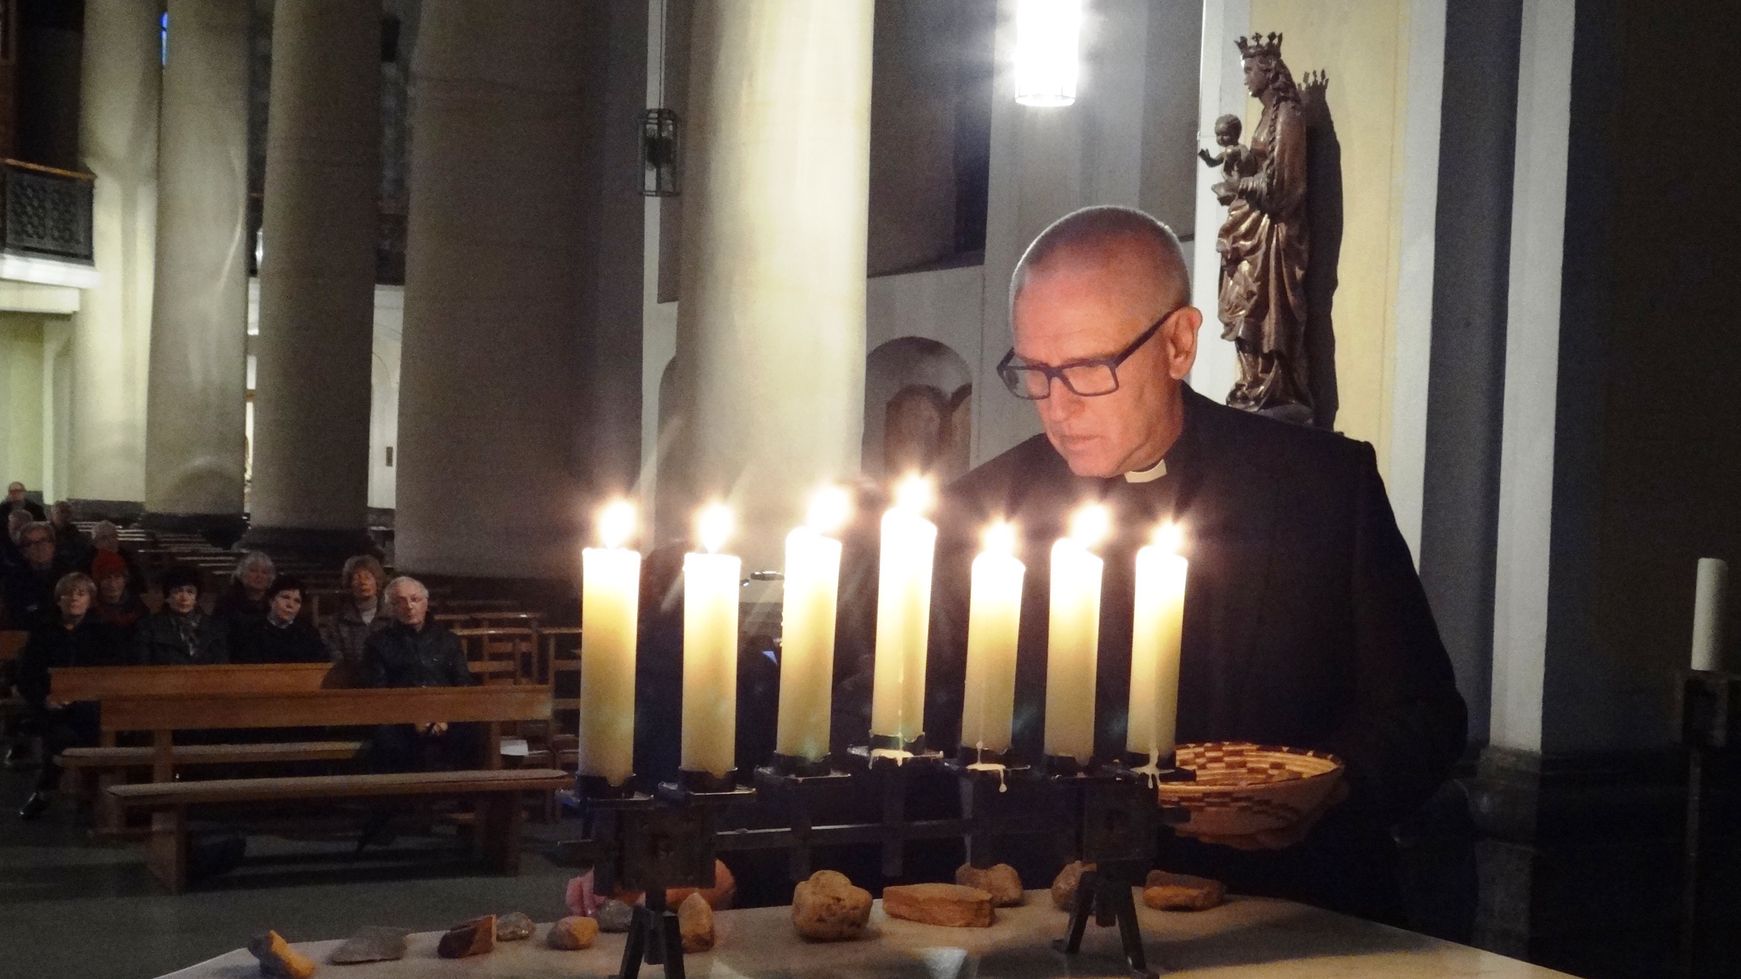 Pfarrer Rainer Gattys legt in Erinnerung an die Würselener Juden Steine auf den Altar. (c) Vladimir Shvemmer